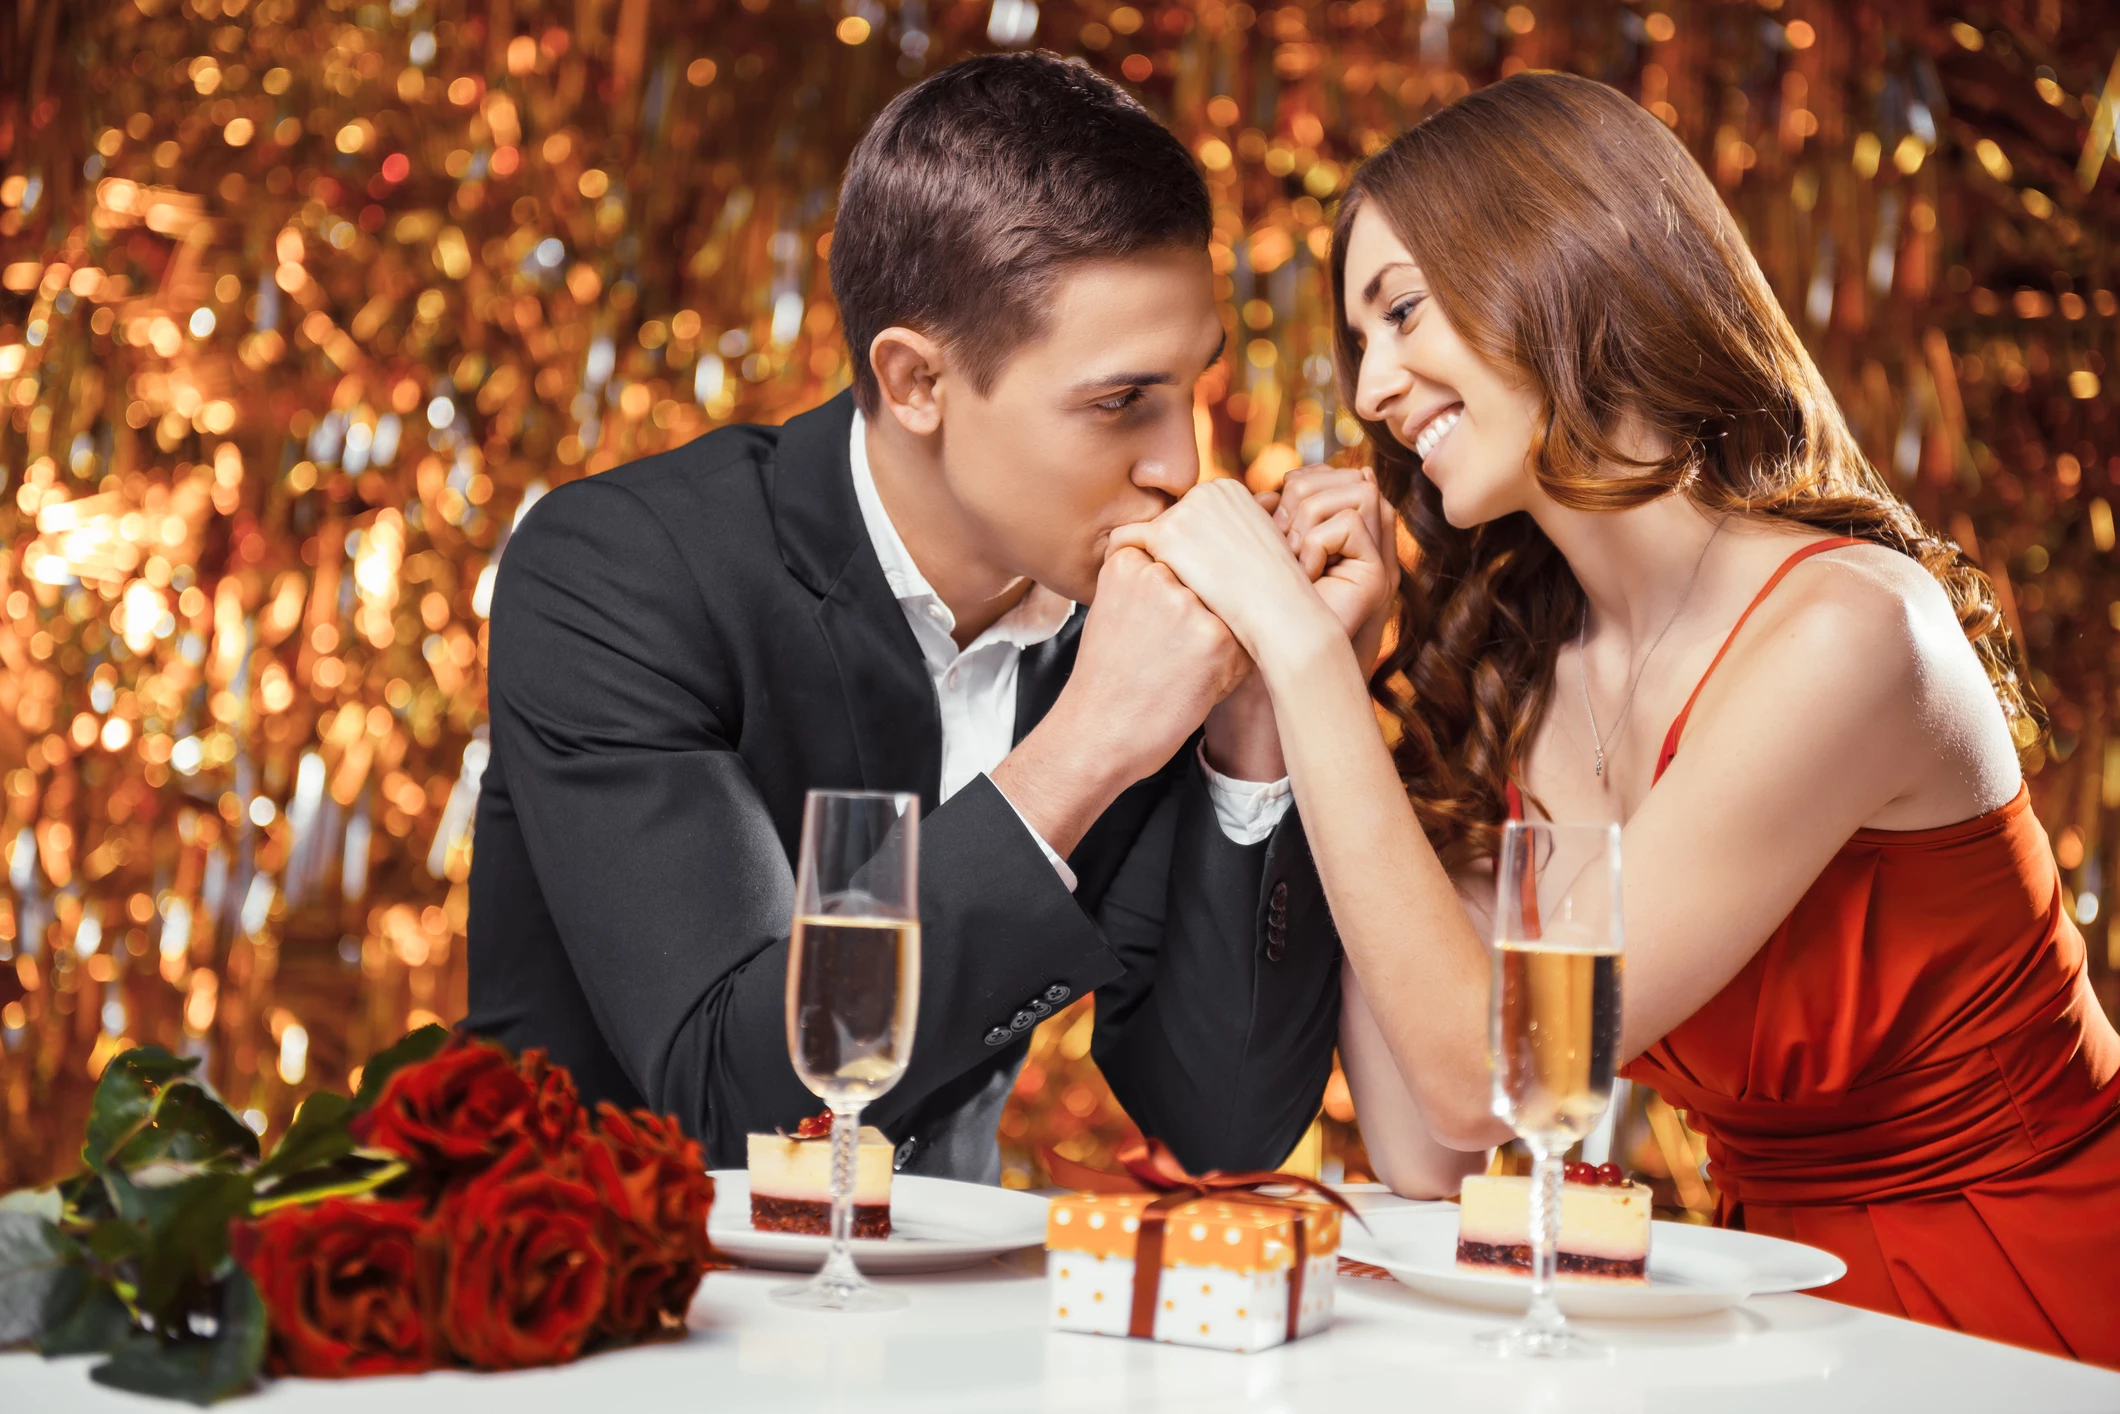 7 Restaurants to Celebrate Valentine's Day in Amarillo